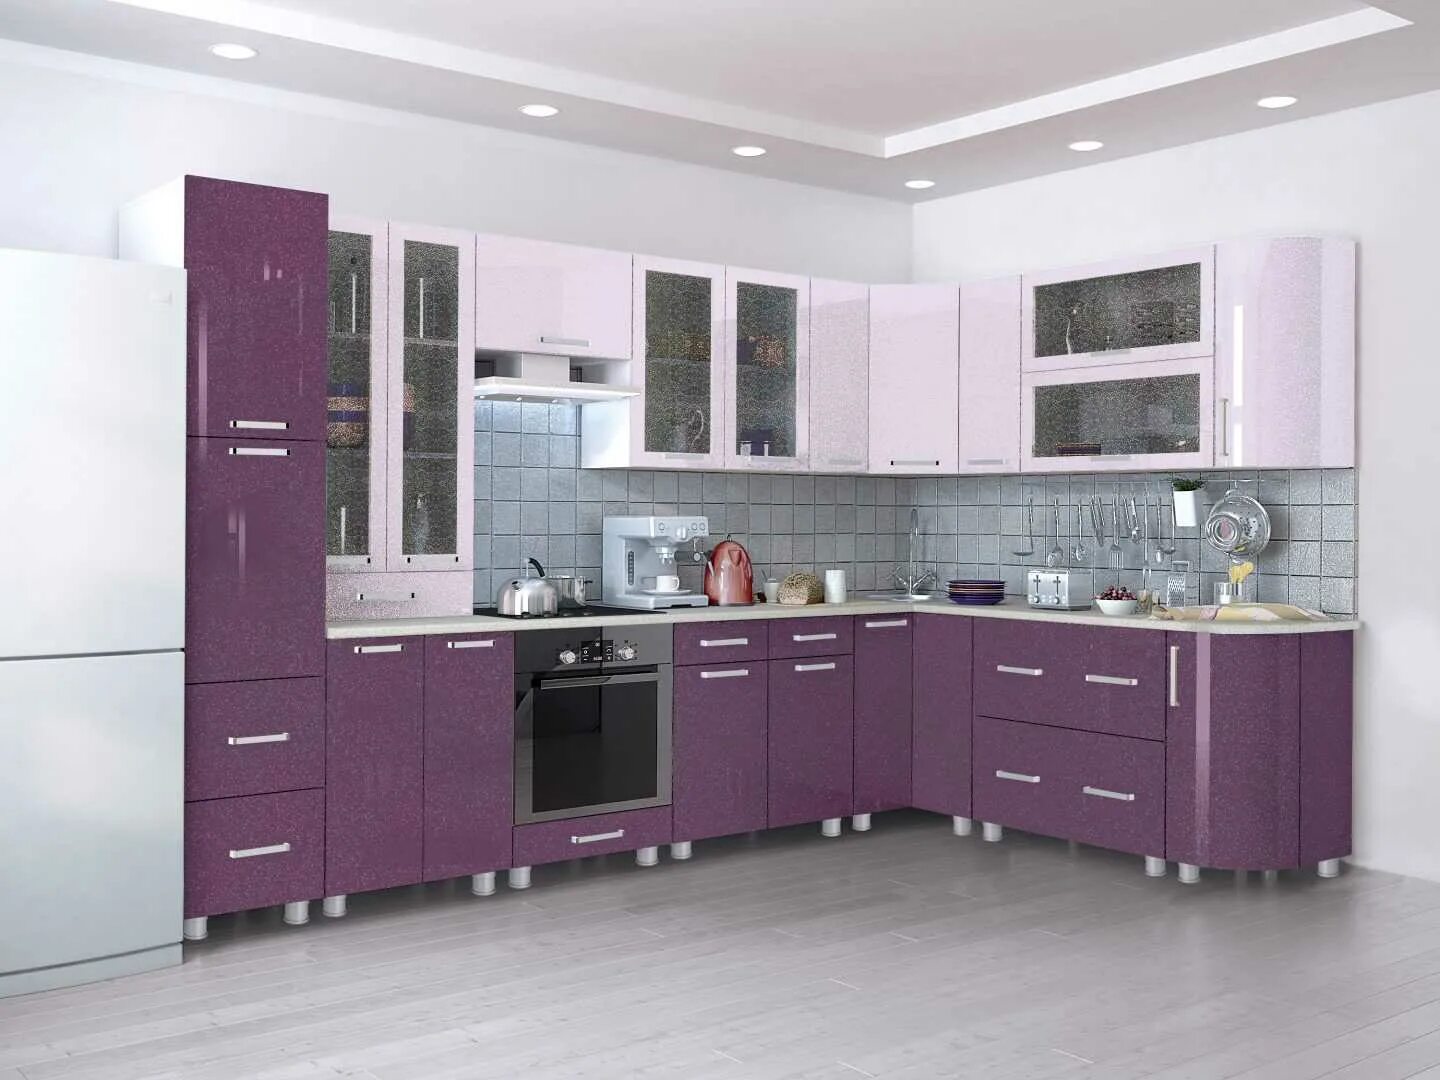 Кухня пенза мебель каталог. Фиолетовая кухня. Корпусная мебель кухня. Фабрики кухонной мебели. Мебельные гарнитуры кухонные.